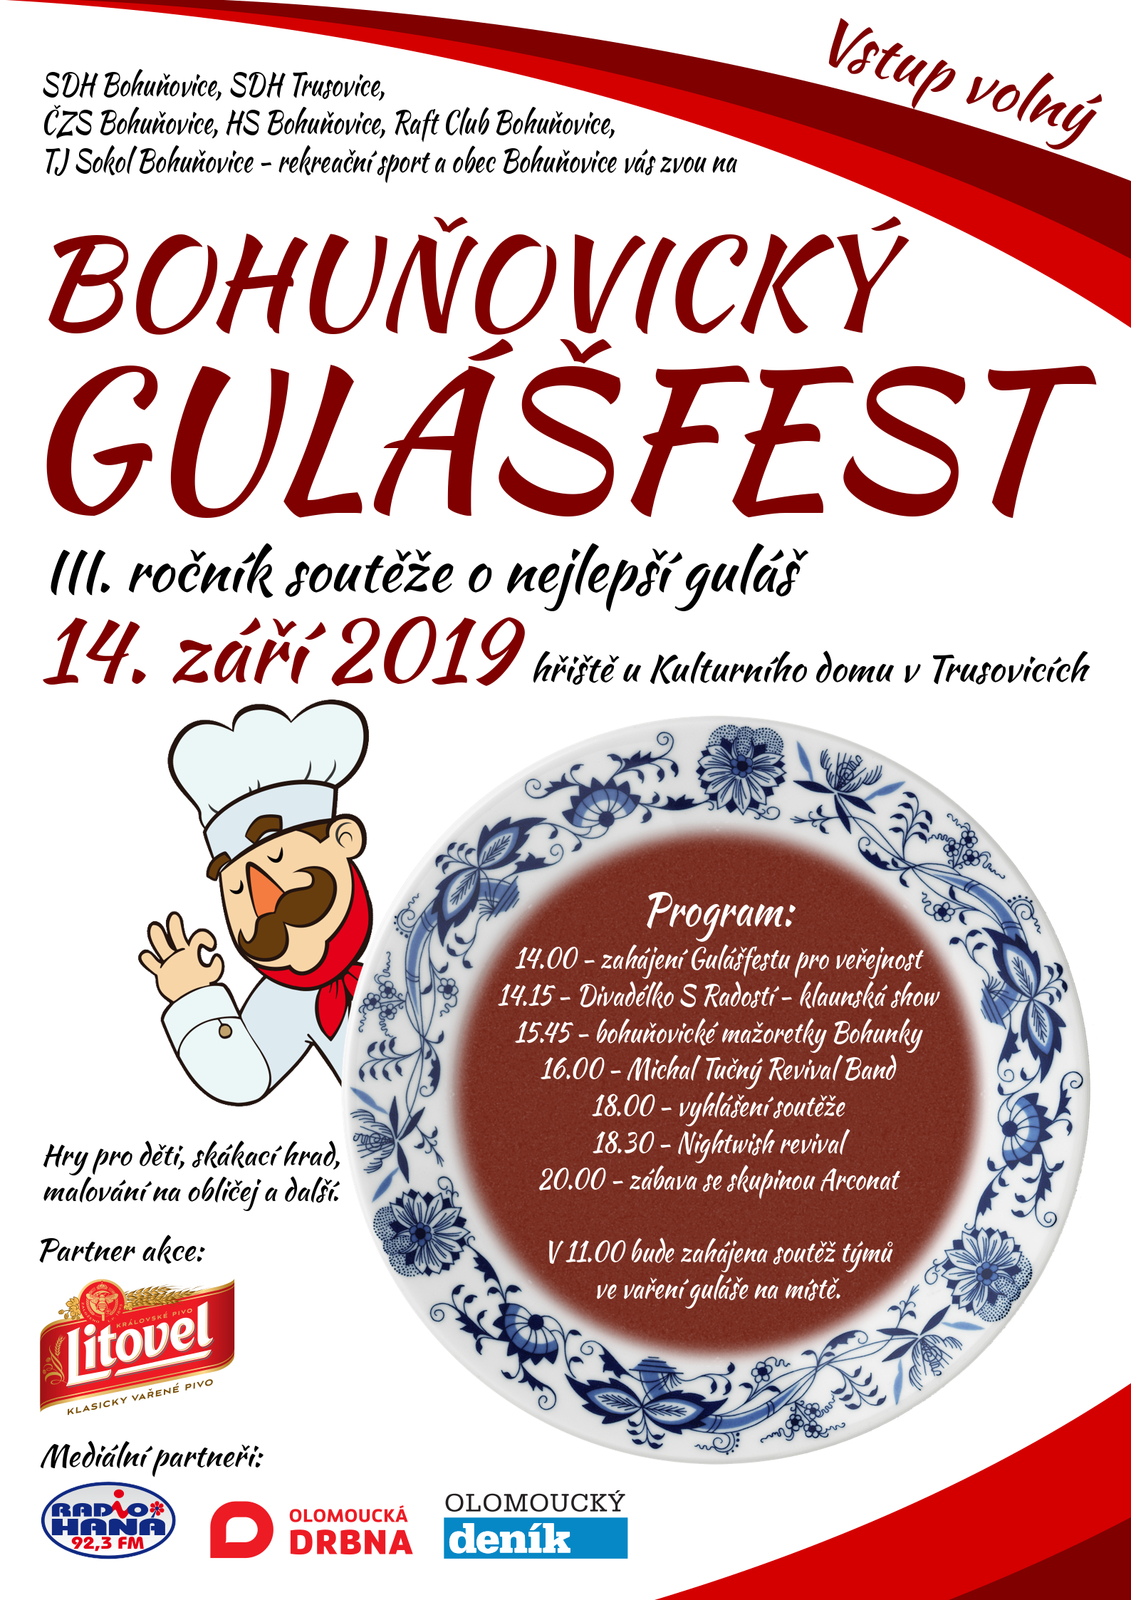 Bohunovicky_gulasfest_2019.jpg